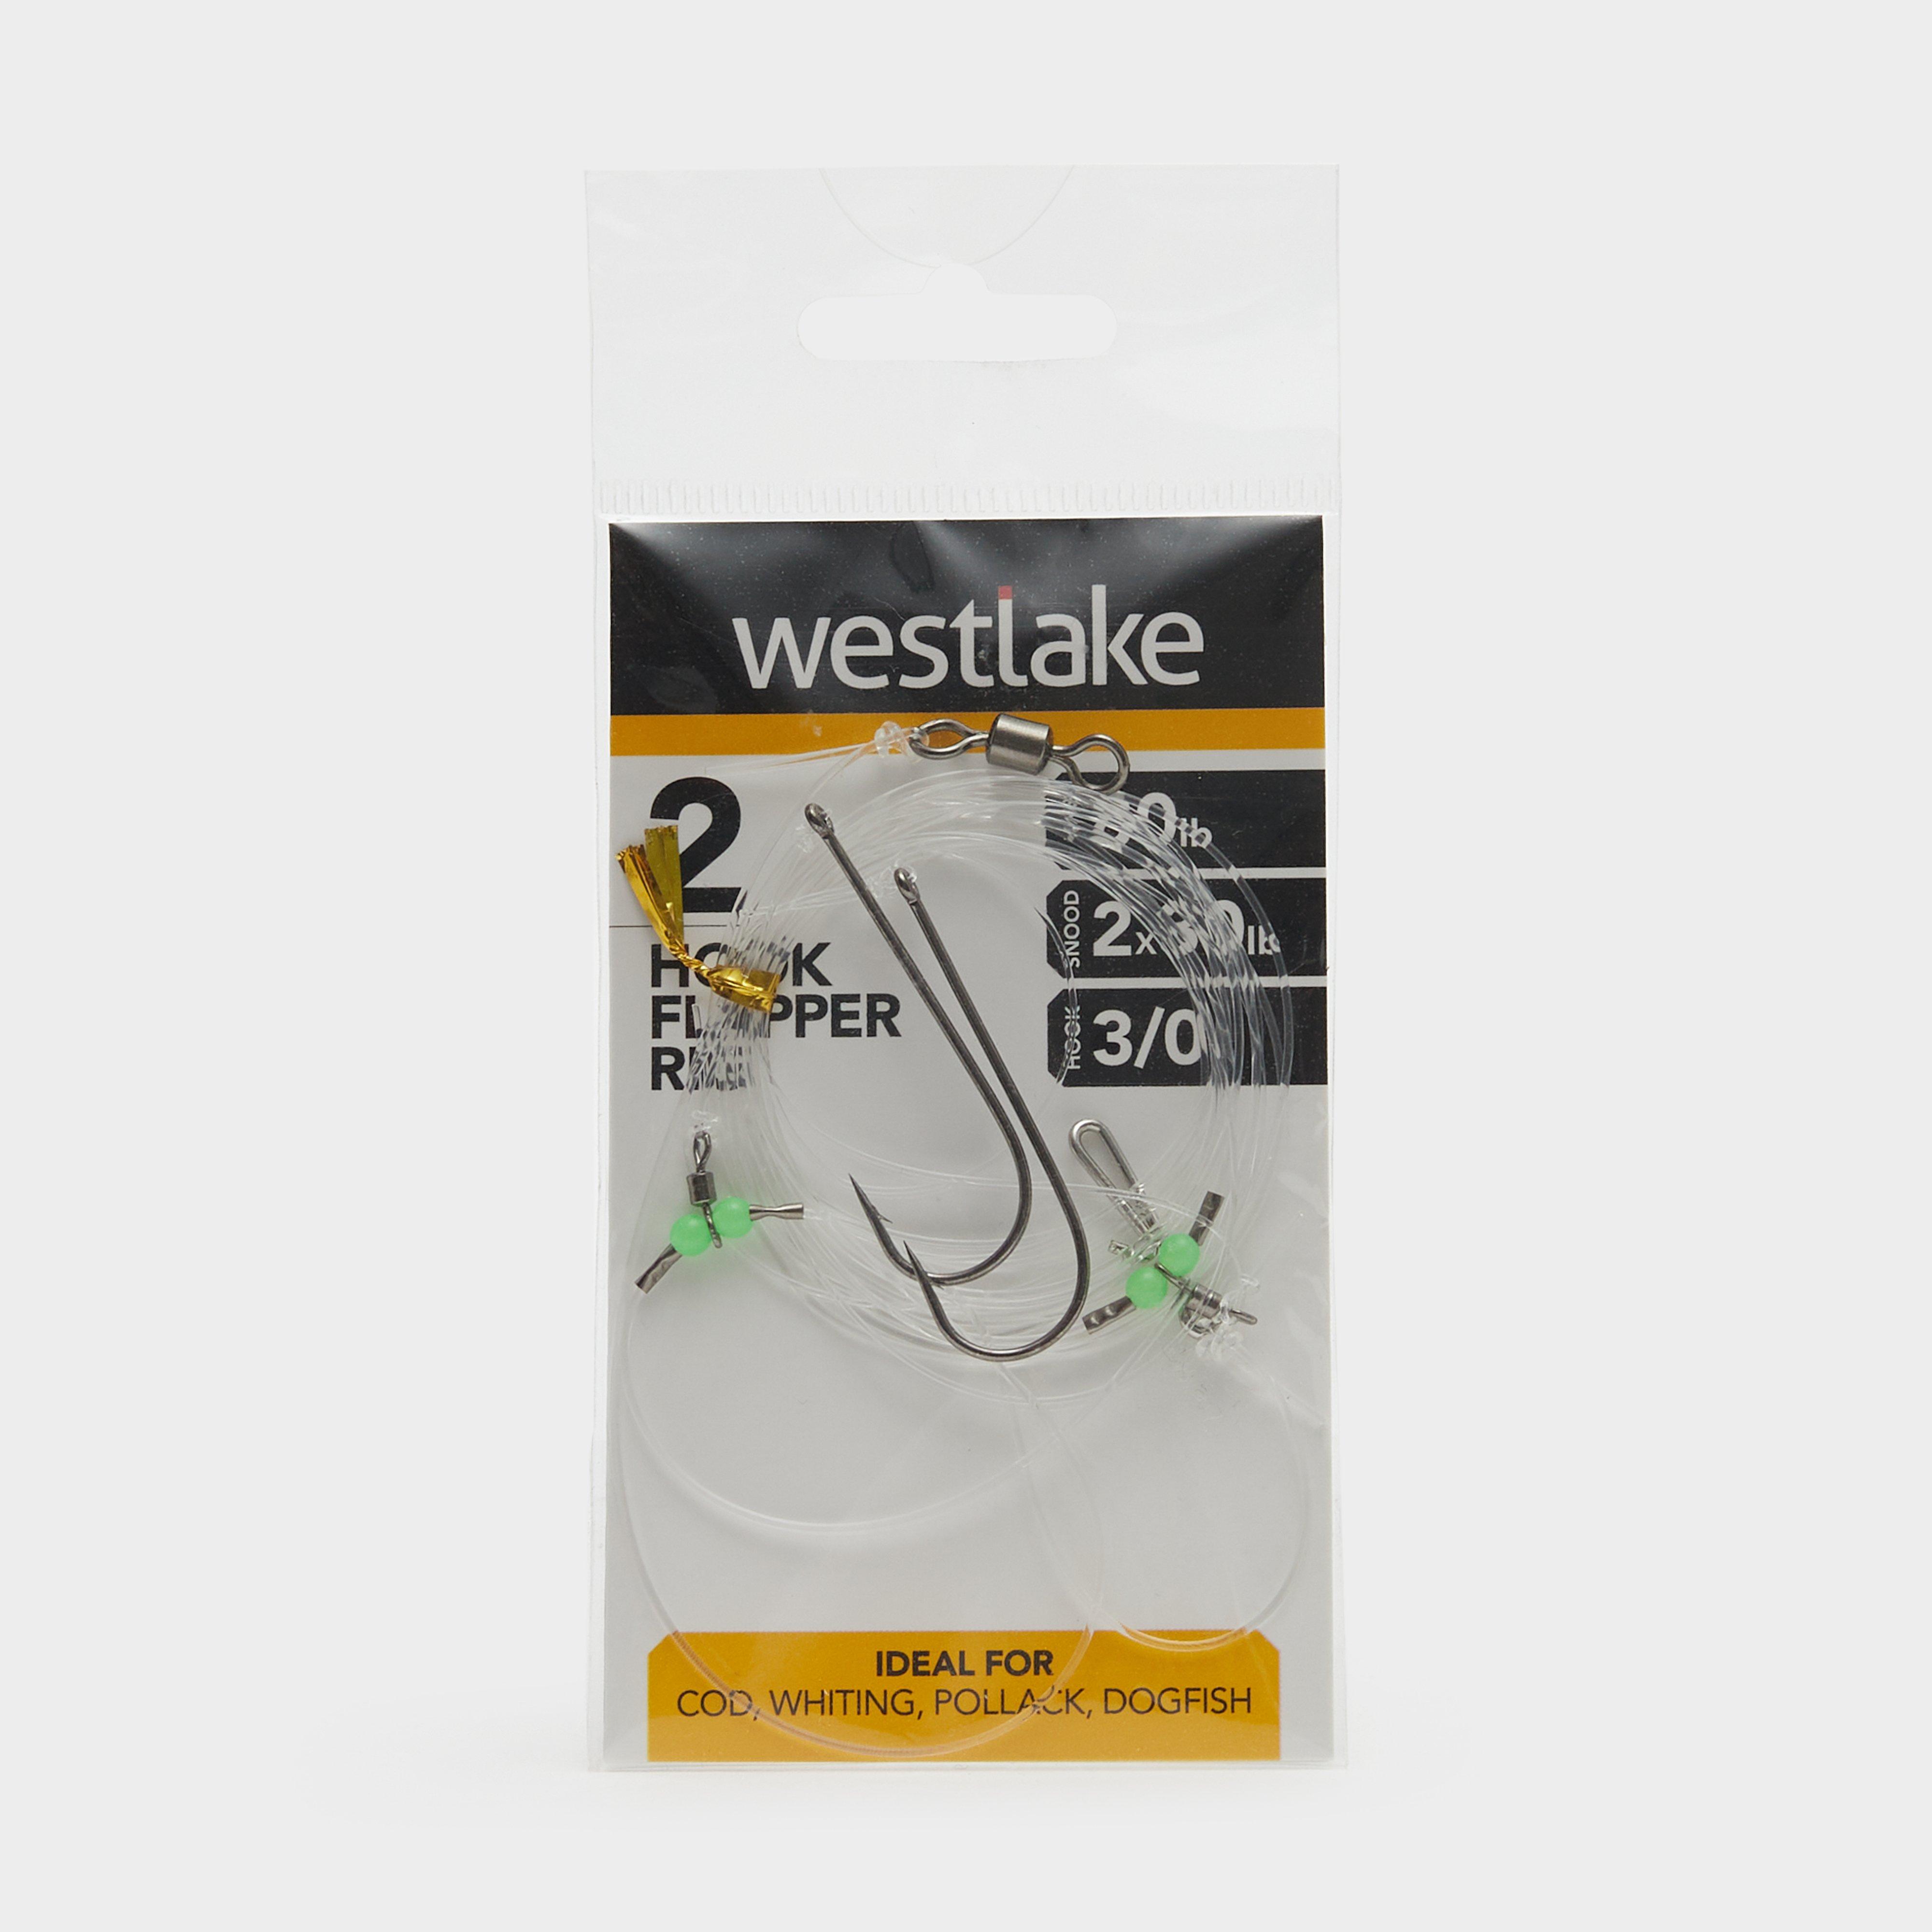 Westlake 2 Hook Flapper Size 3/0  Multi Coloured